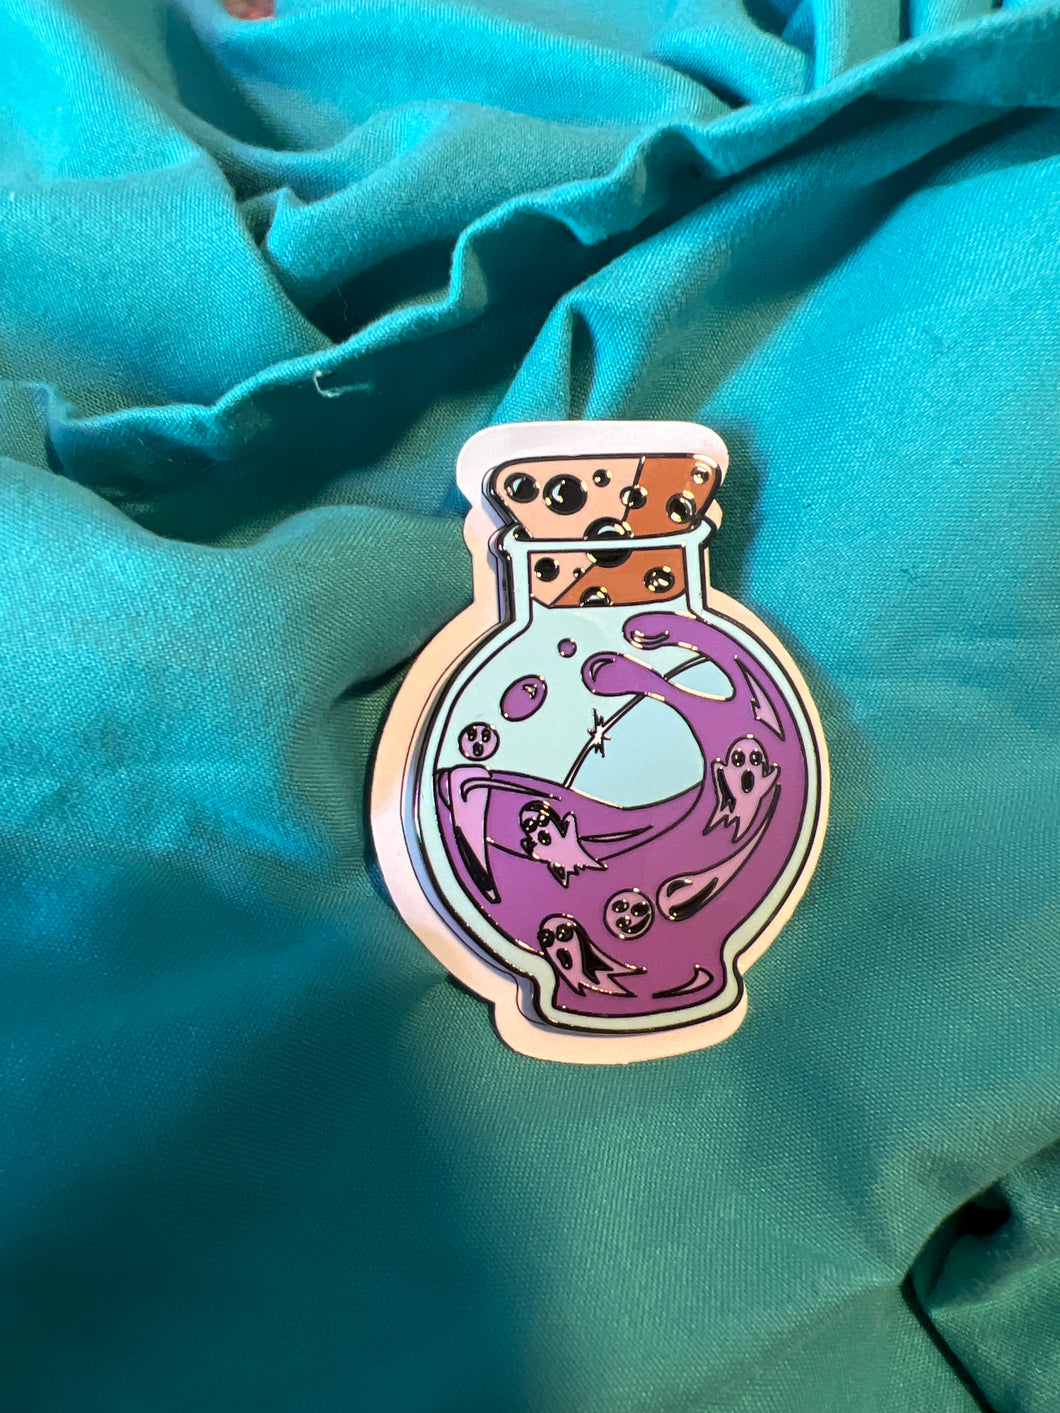 Purple Potion Bottle Ghost Fantasy Pin Le 20 By Bendiesticks